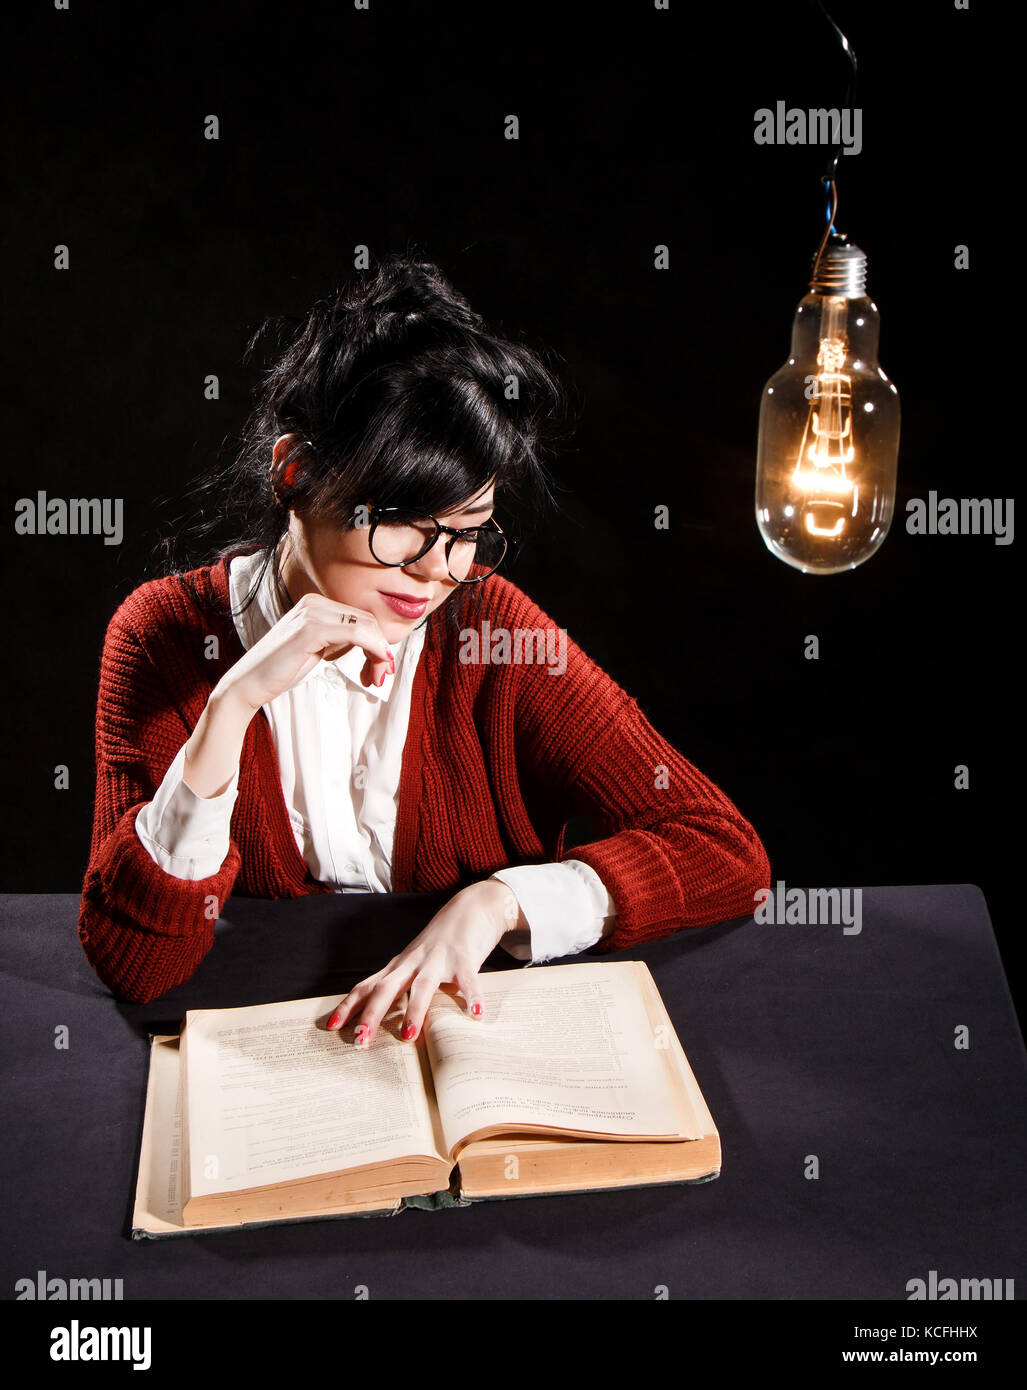 Hübsche junge Frau Lesung im Rahmen der Glühbirne Stockfoto